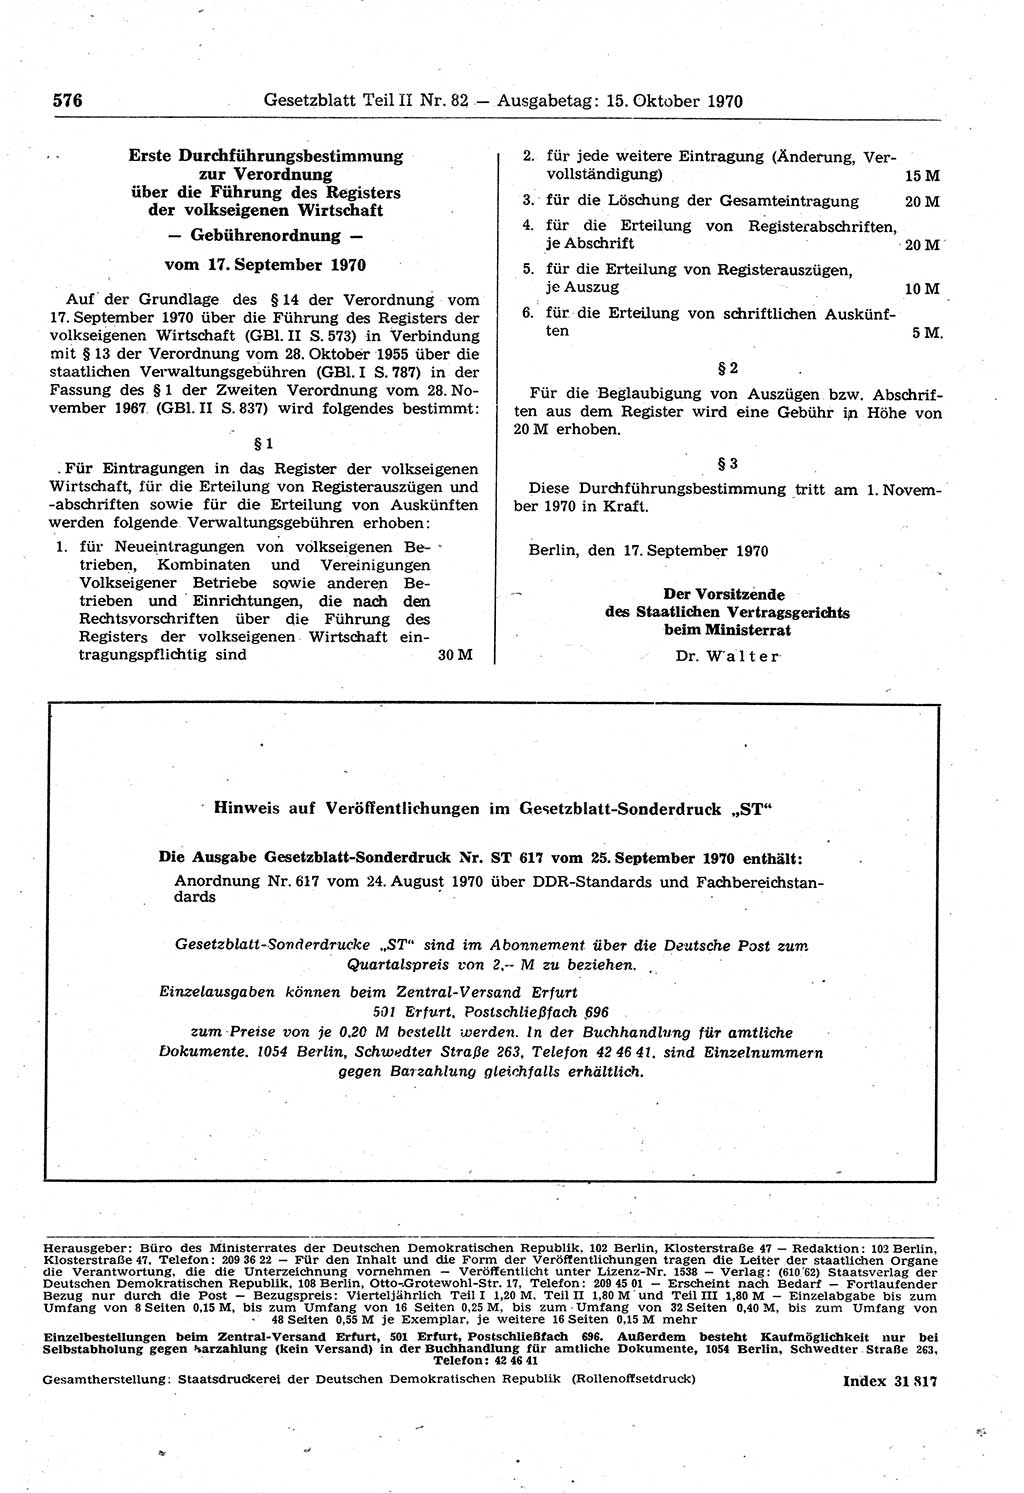 Gesetzblatt (GBl.) der Deutschen Demokratischen Republik (DDR) Teil ⅠⅠ 1970, Seite 576 (GBl. DDR ⅠⅠ 1970, S. 576)